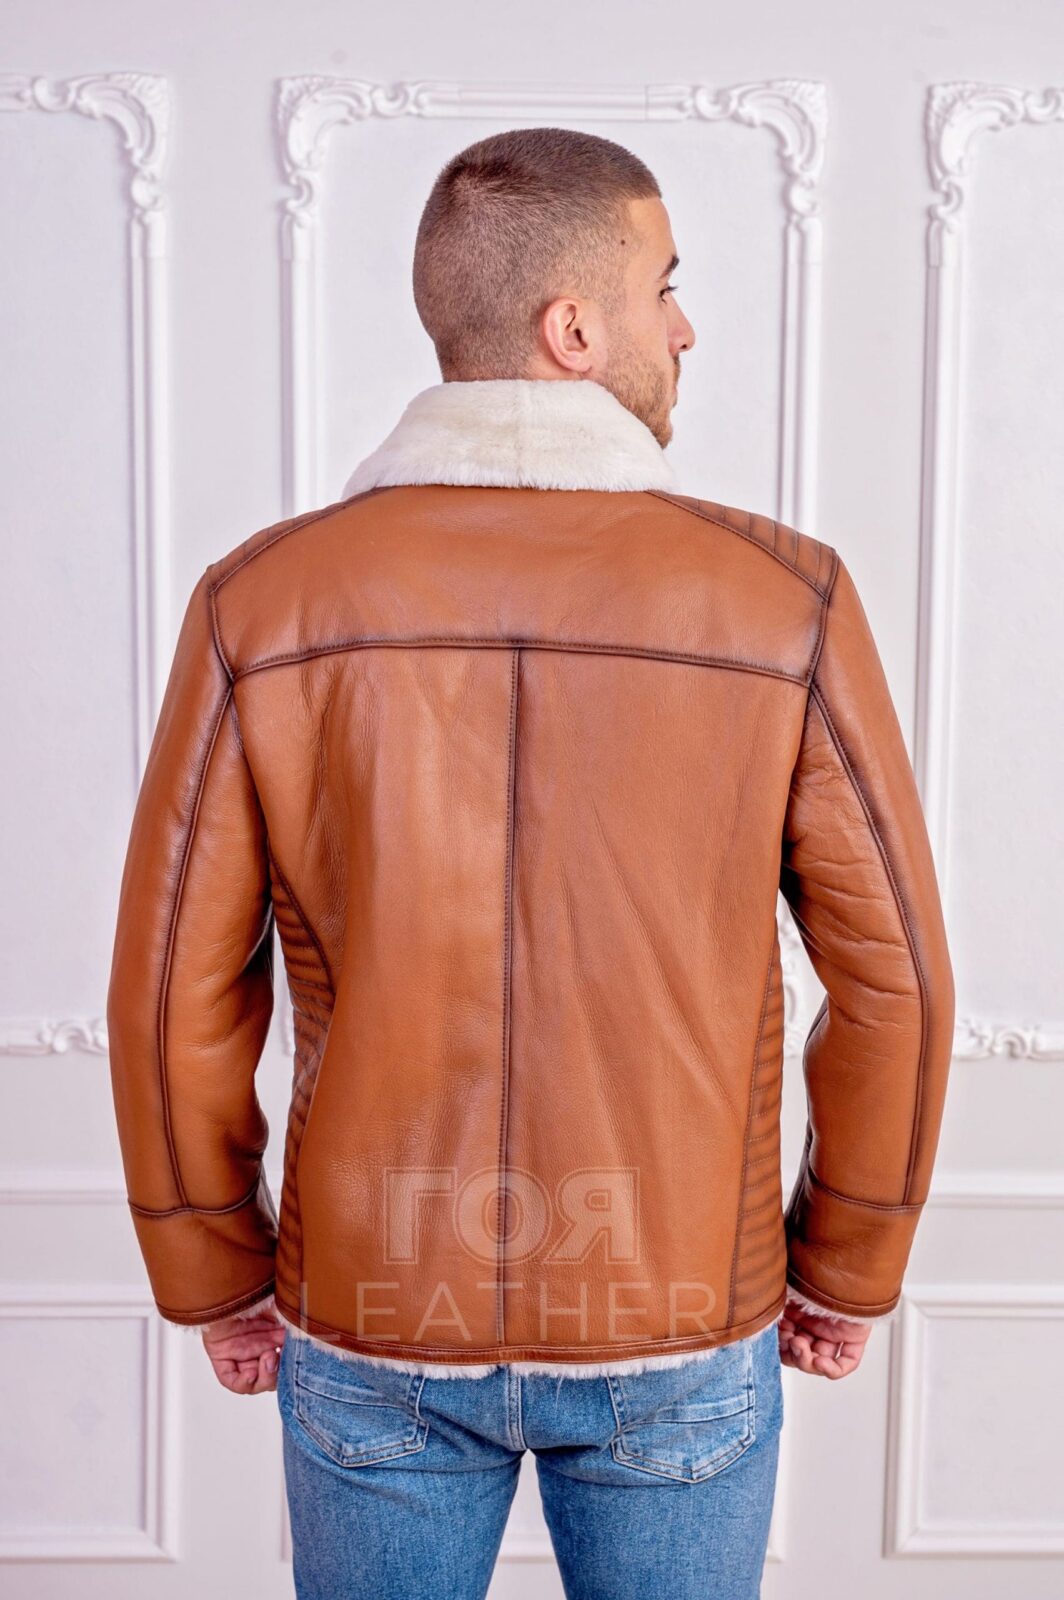 Мъжки агнешки кожух от ГОЯ Leather. Нов модел и цвят мъжки кожух от новата ни колекция 2021 г. 100% естествена агнешка кожа.